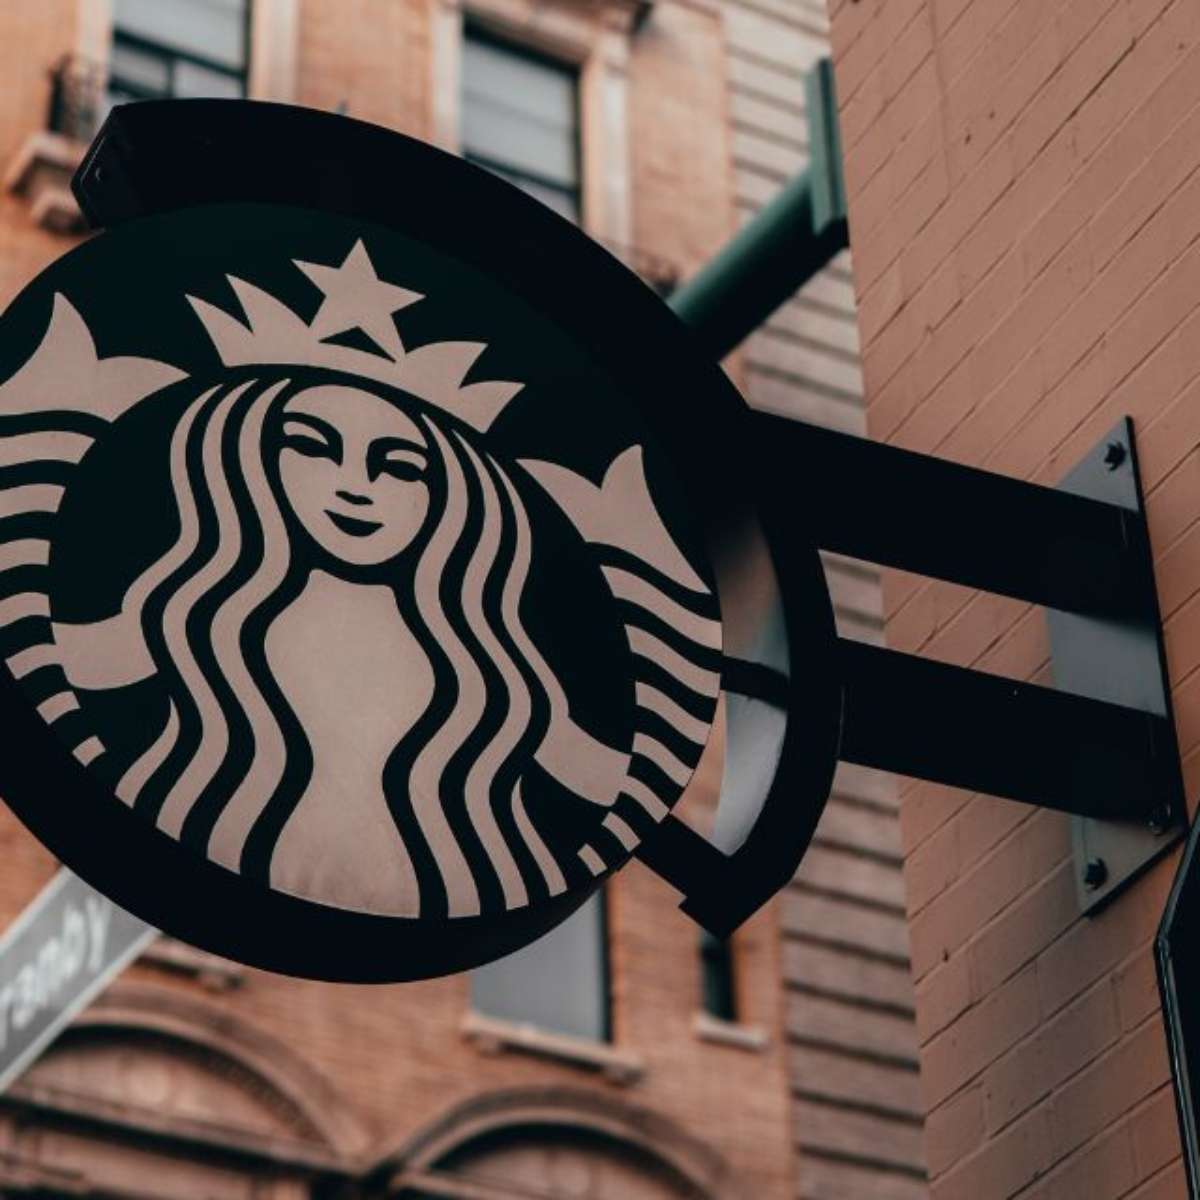 Starbucks fecha lojas no país em meio à crise da SouthRock Capital, Empresas